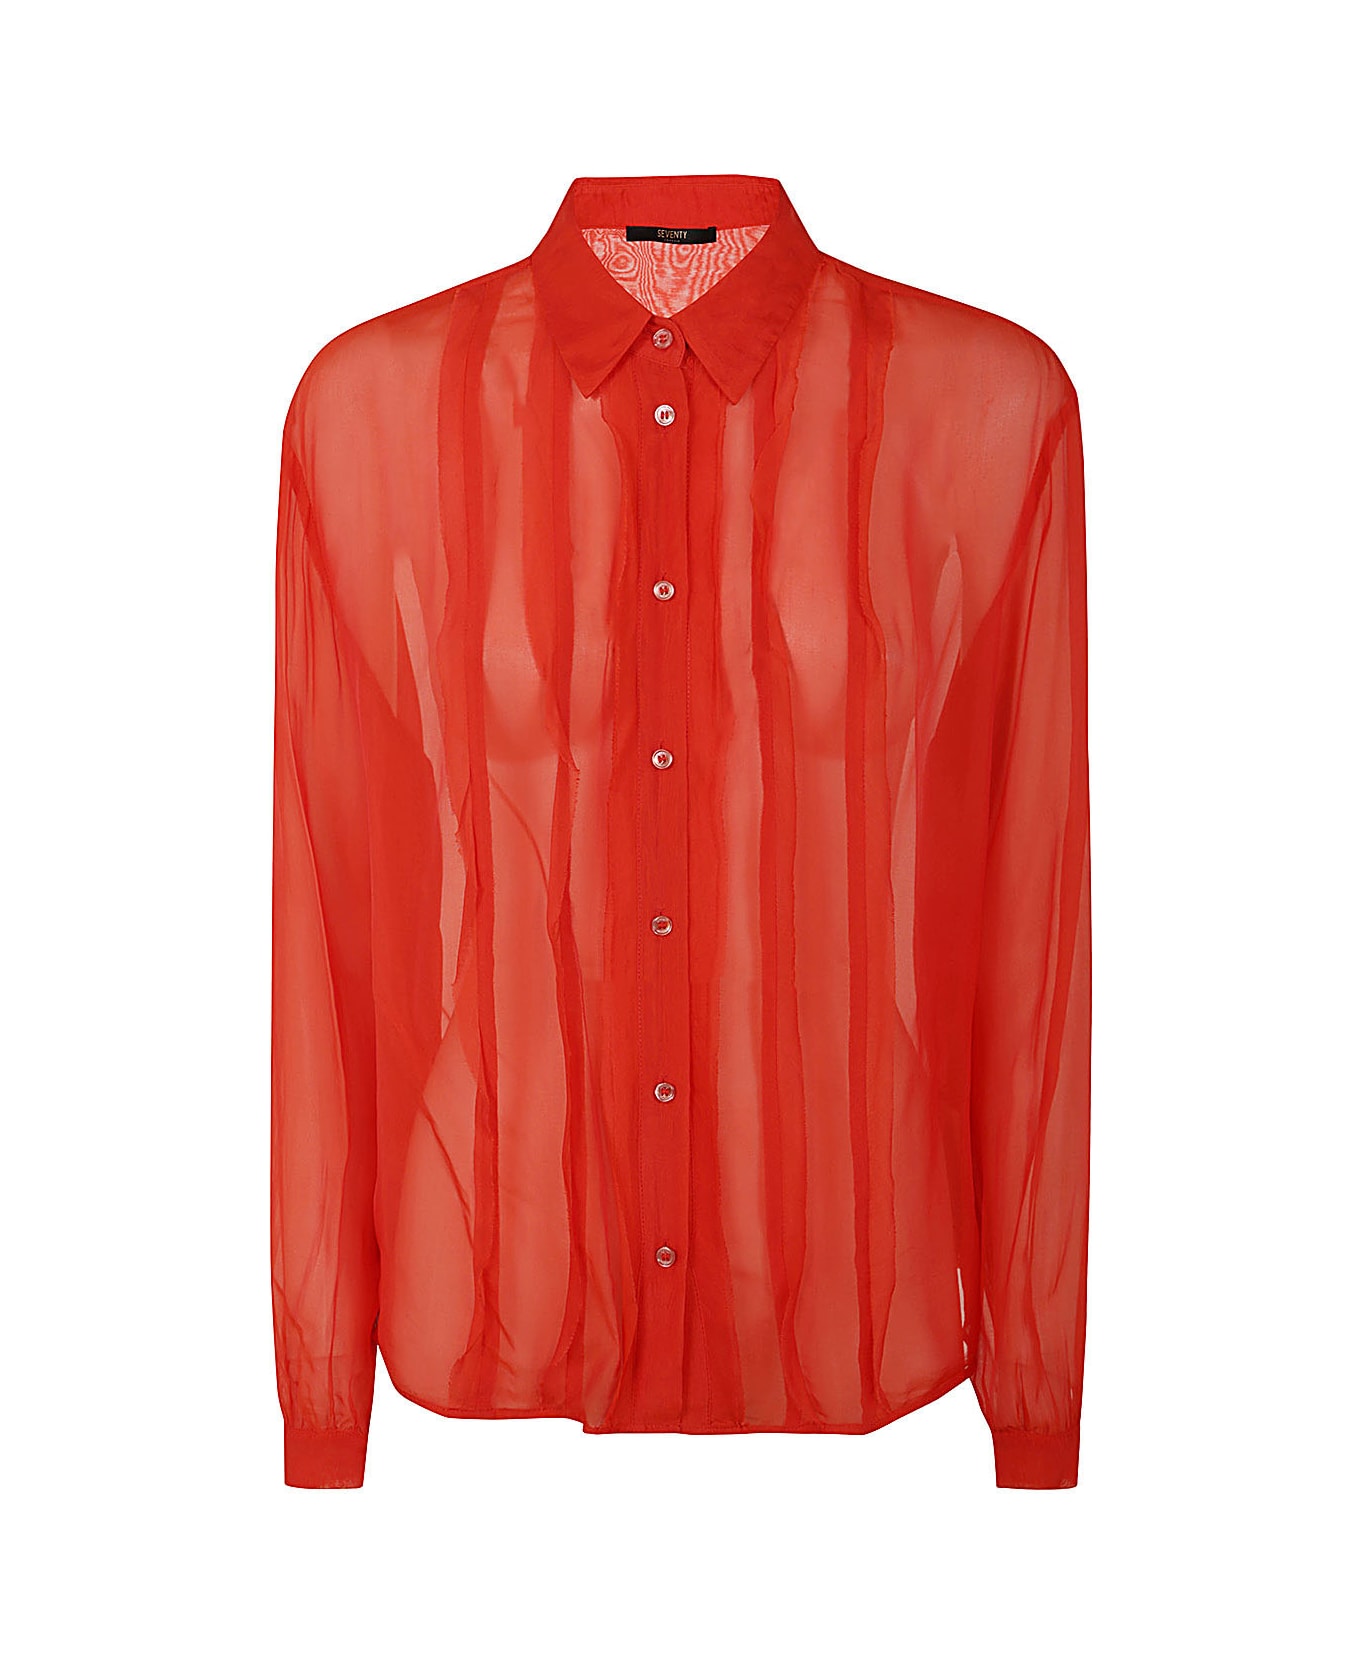 Seventy Shirt - Red シャツ